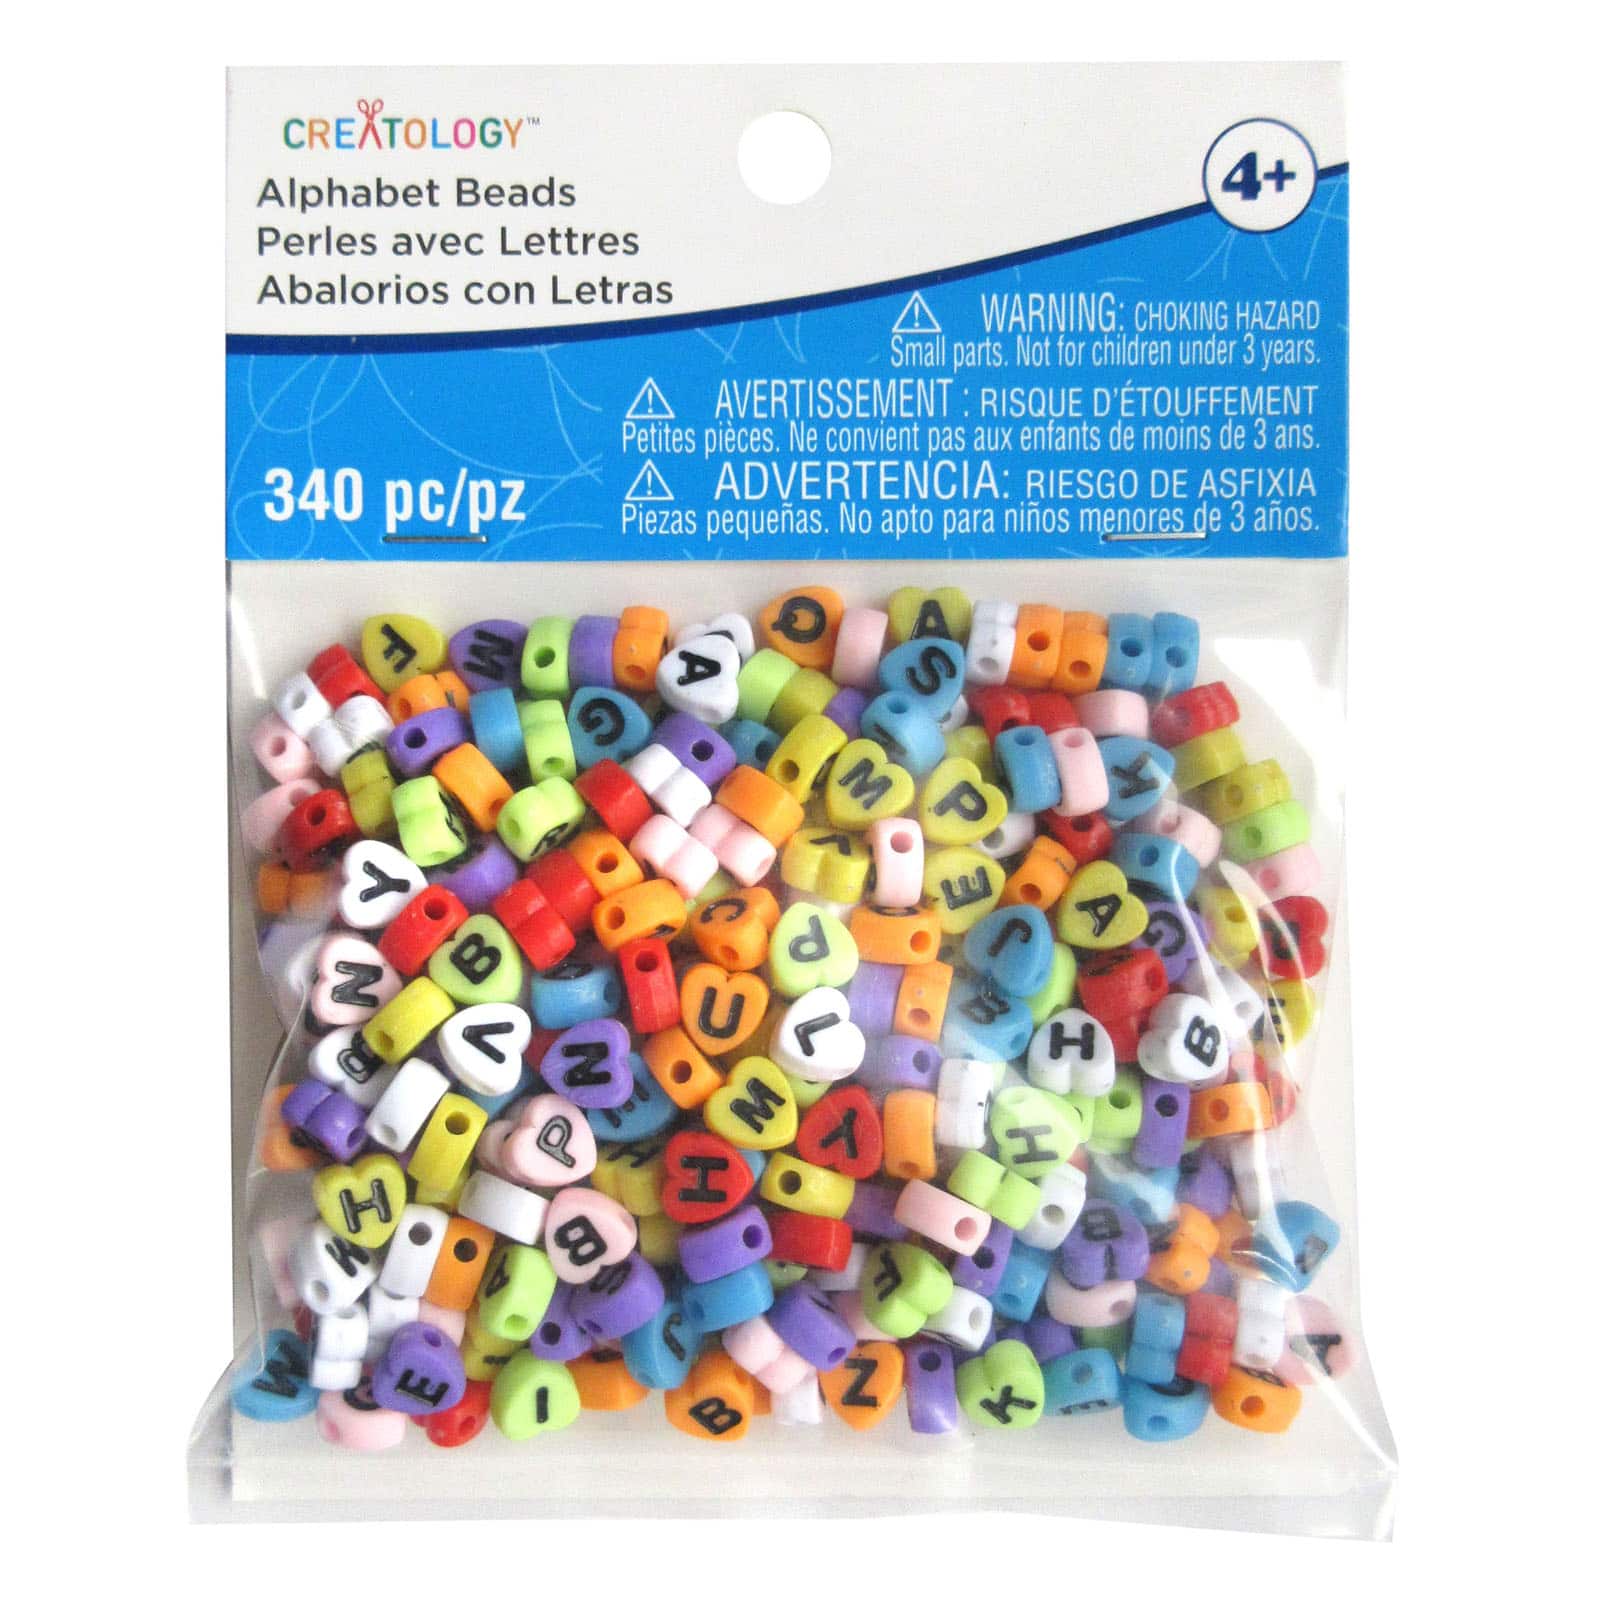 Pony beads 6MM Letter beads Kits 1050 pcs to Make Bracelets